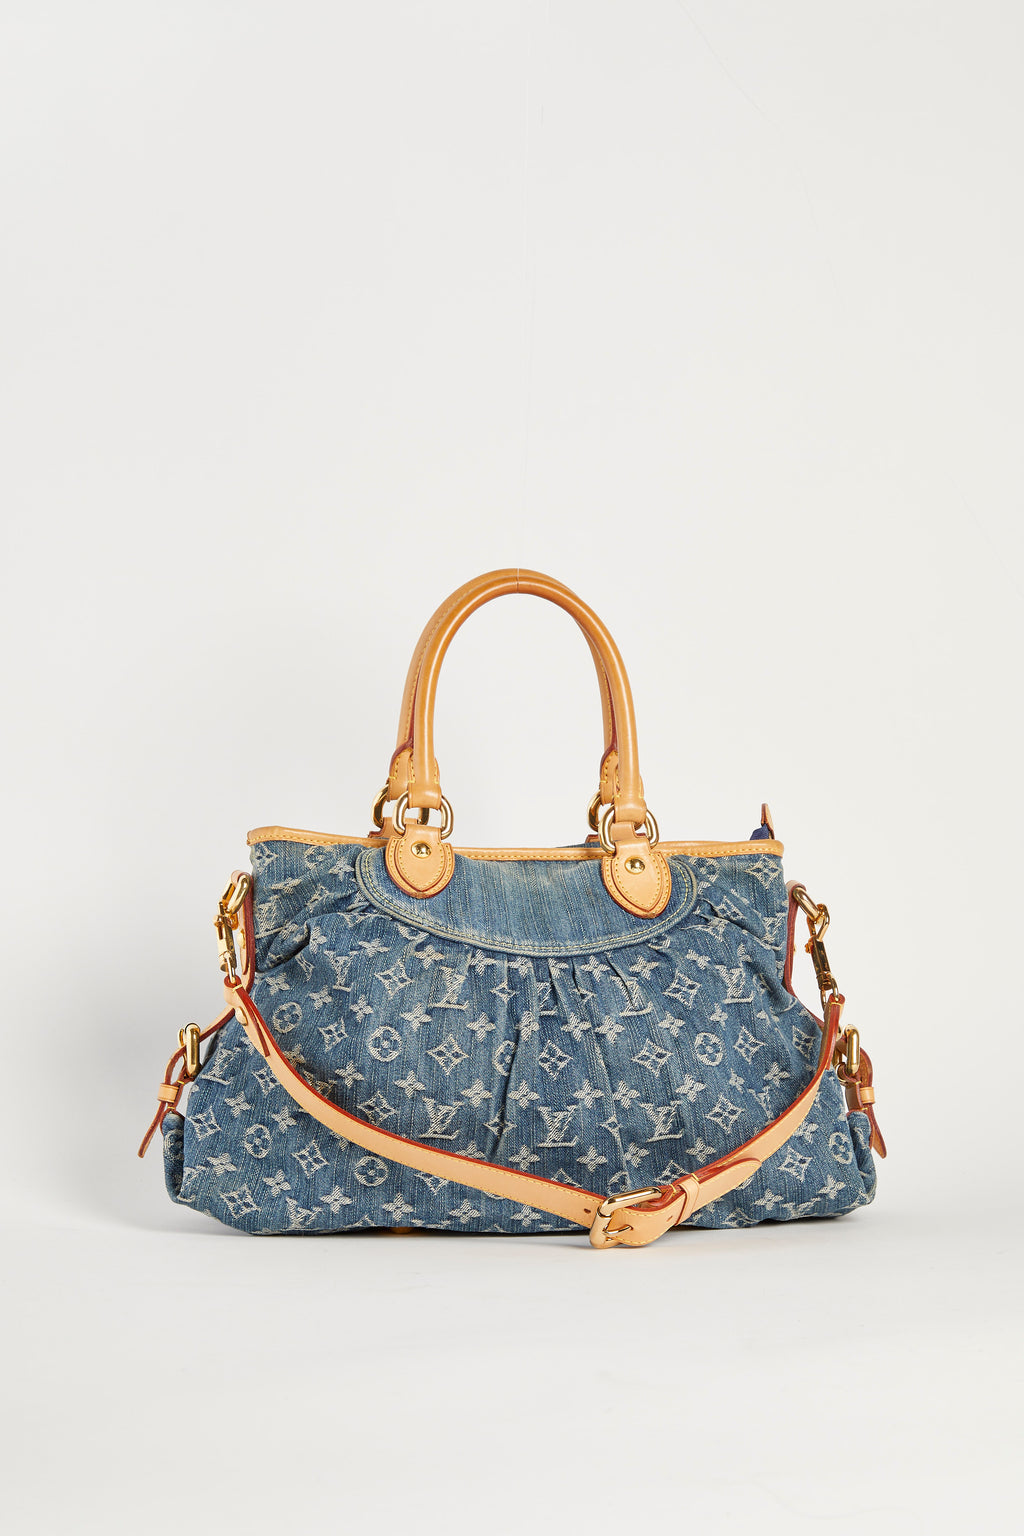 Vintage Louis Vuitton Neo Cabby Blue Denim Tote Bag